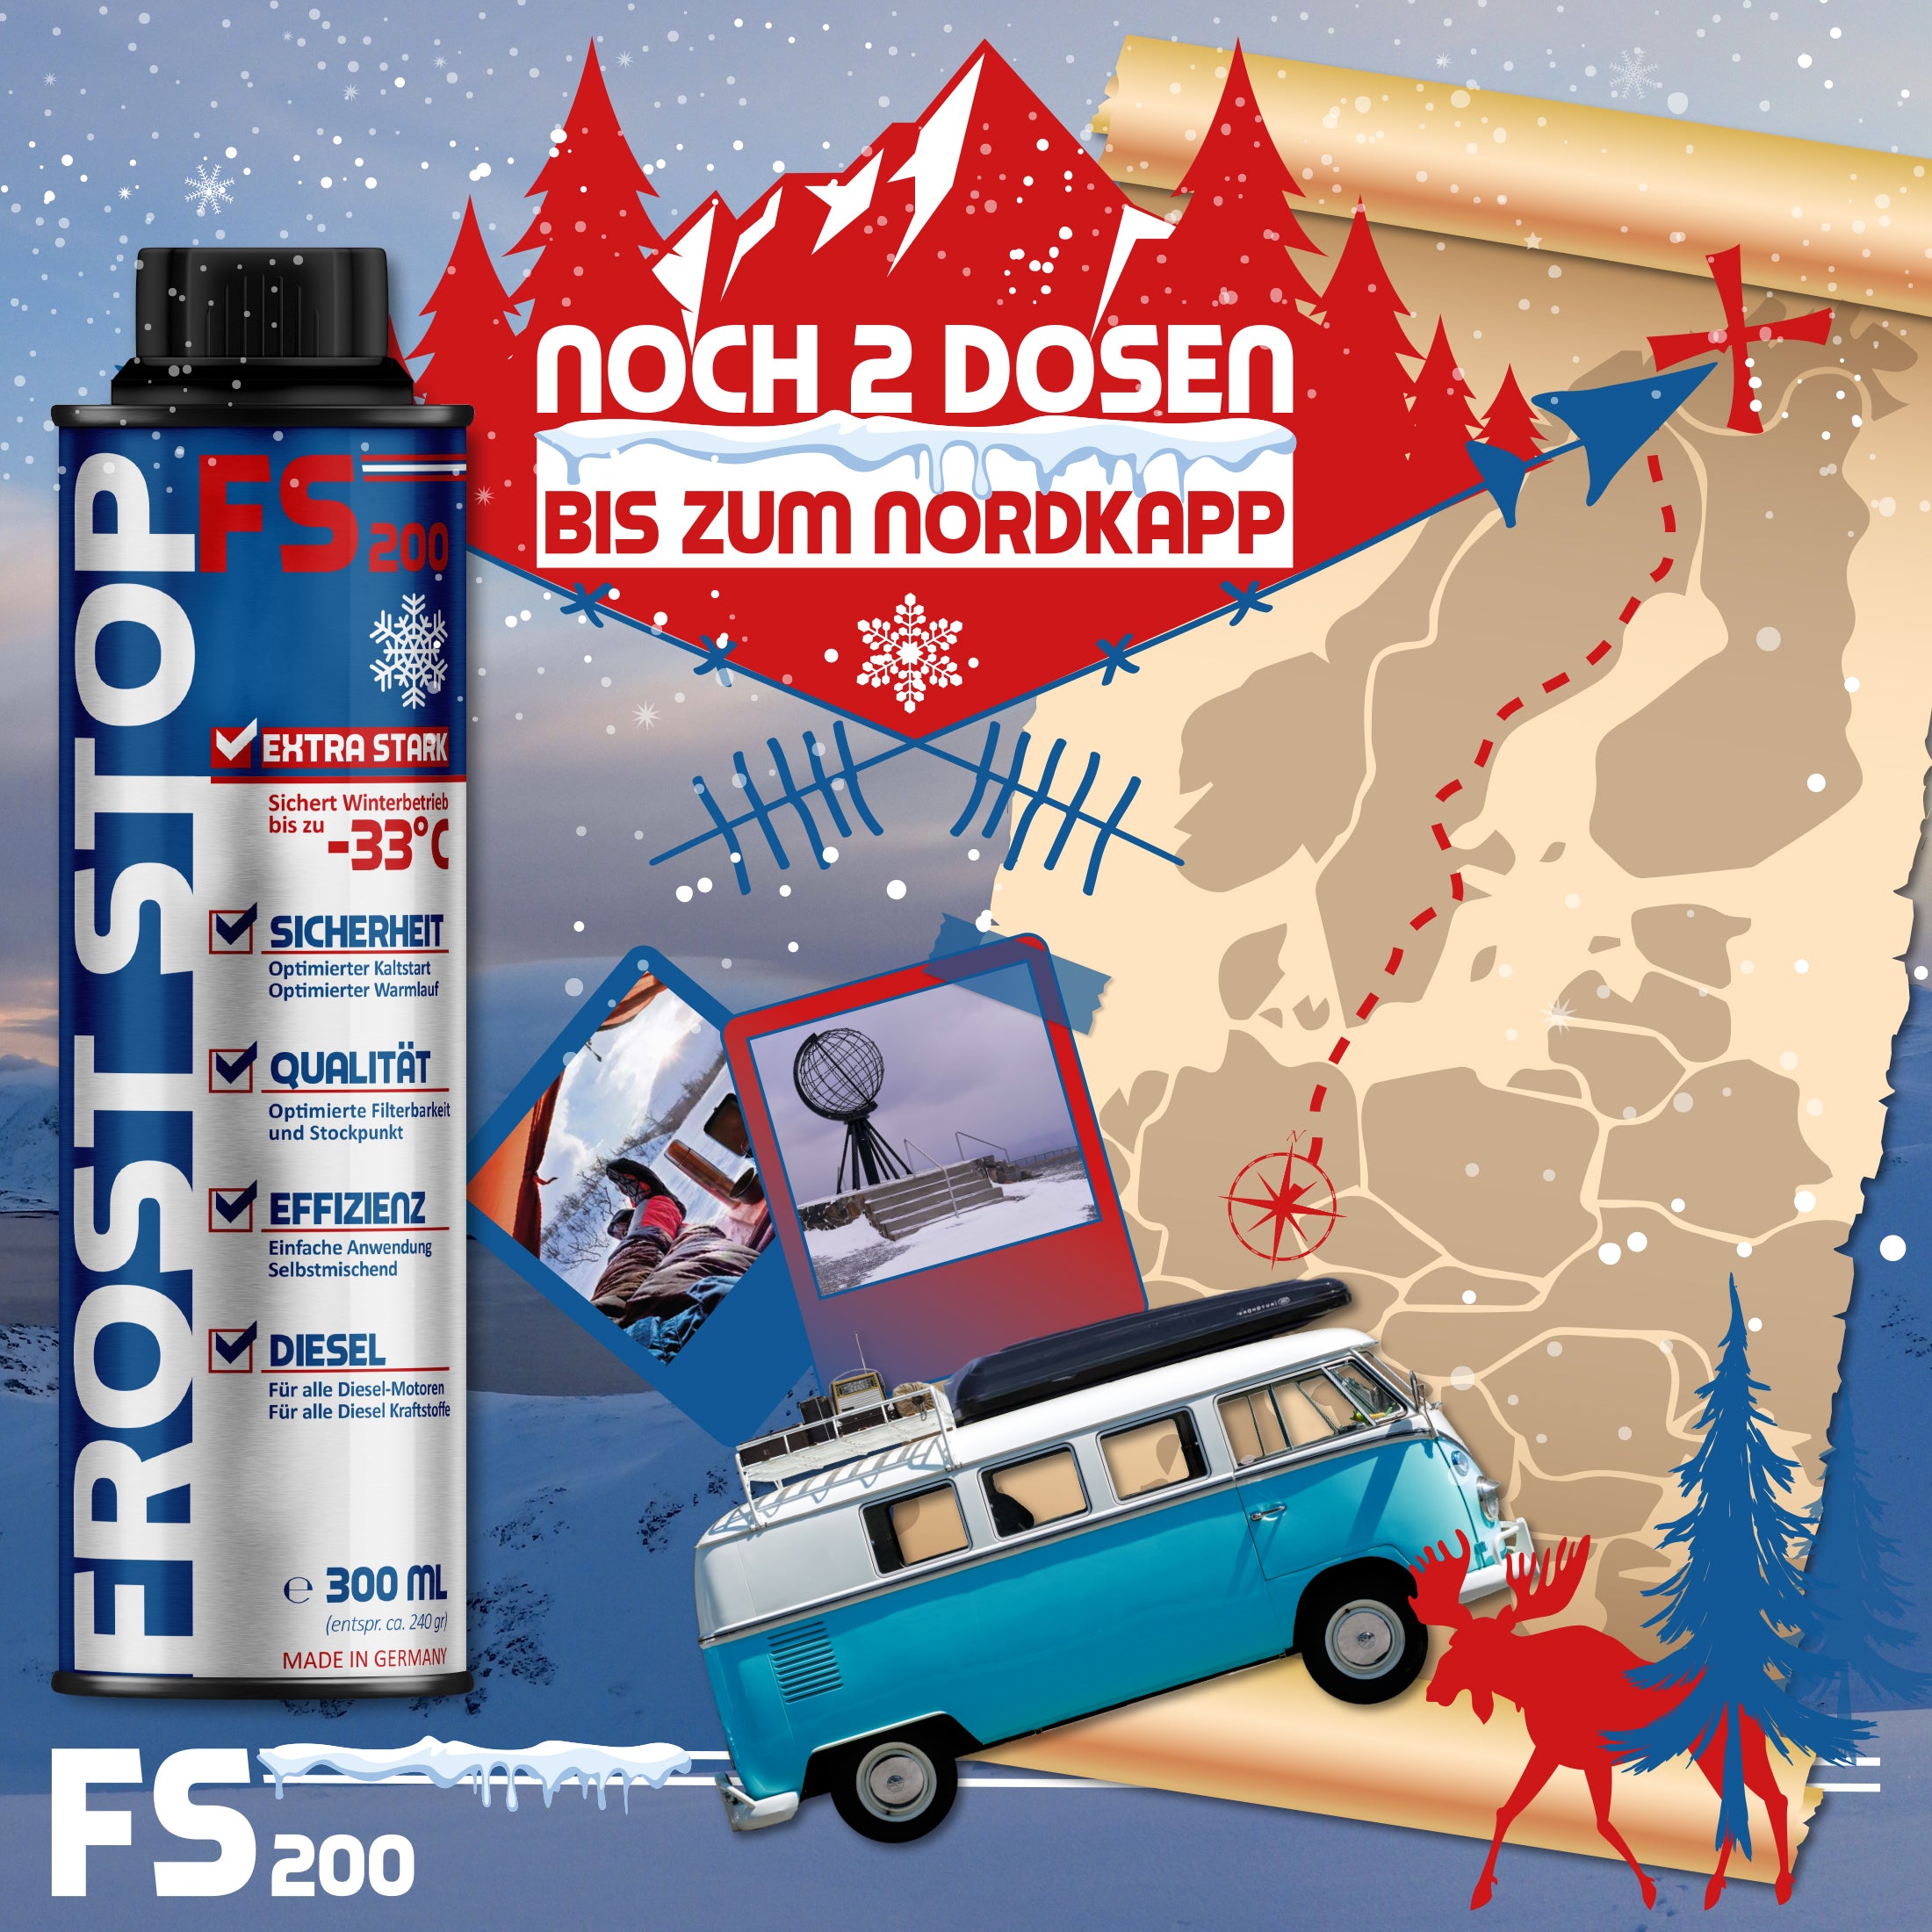 ORIGINAL SYPRIN Diesel All-Year Set - Reiniger Additiv und Froststop I  Winterzusatz – syprin